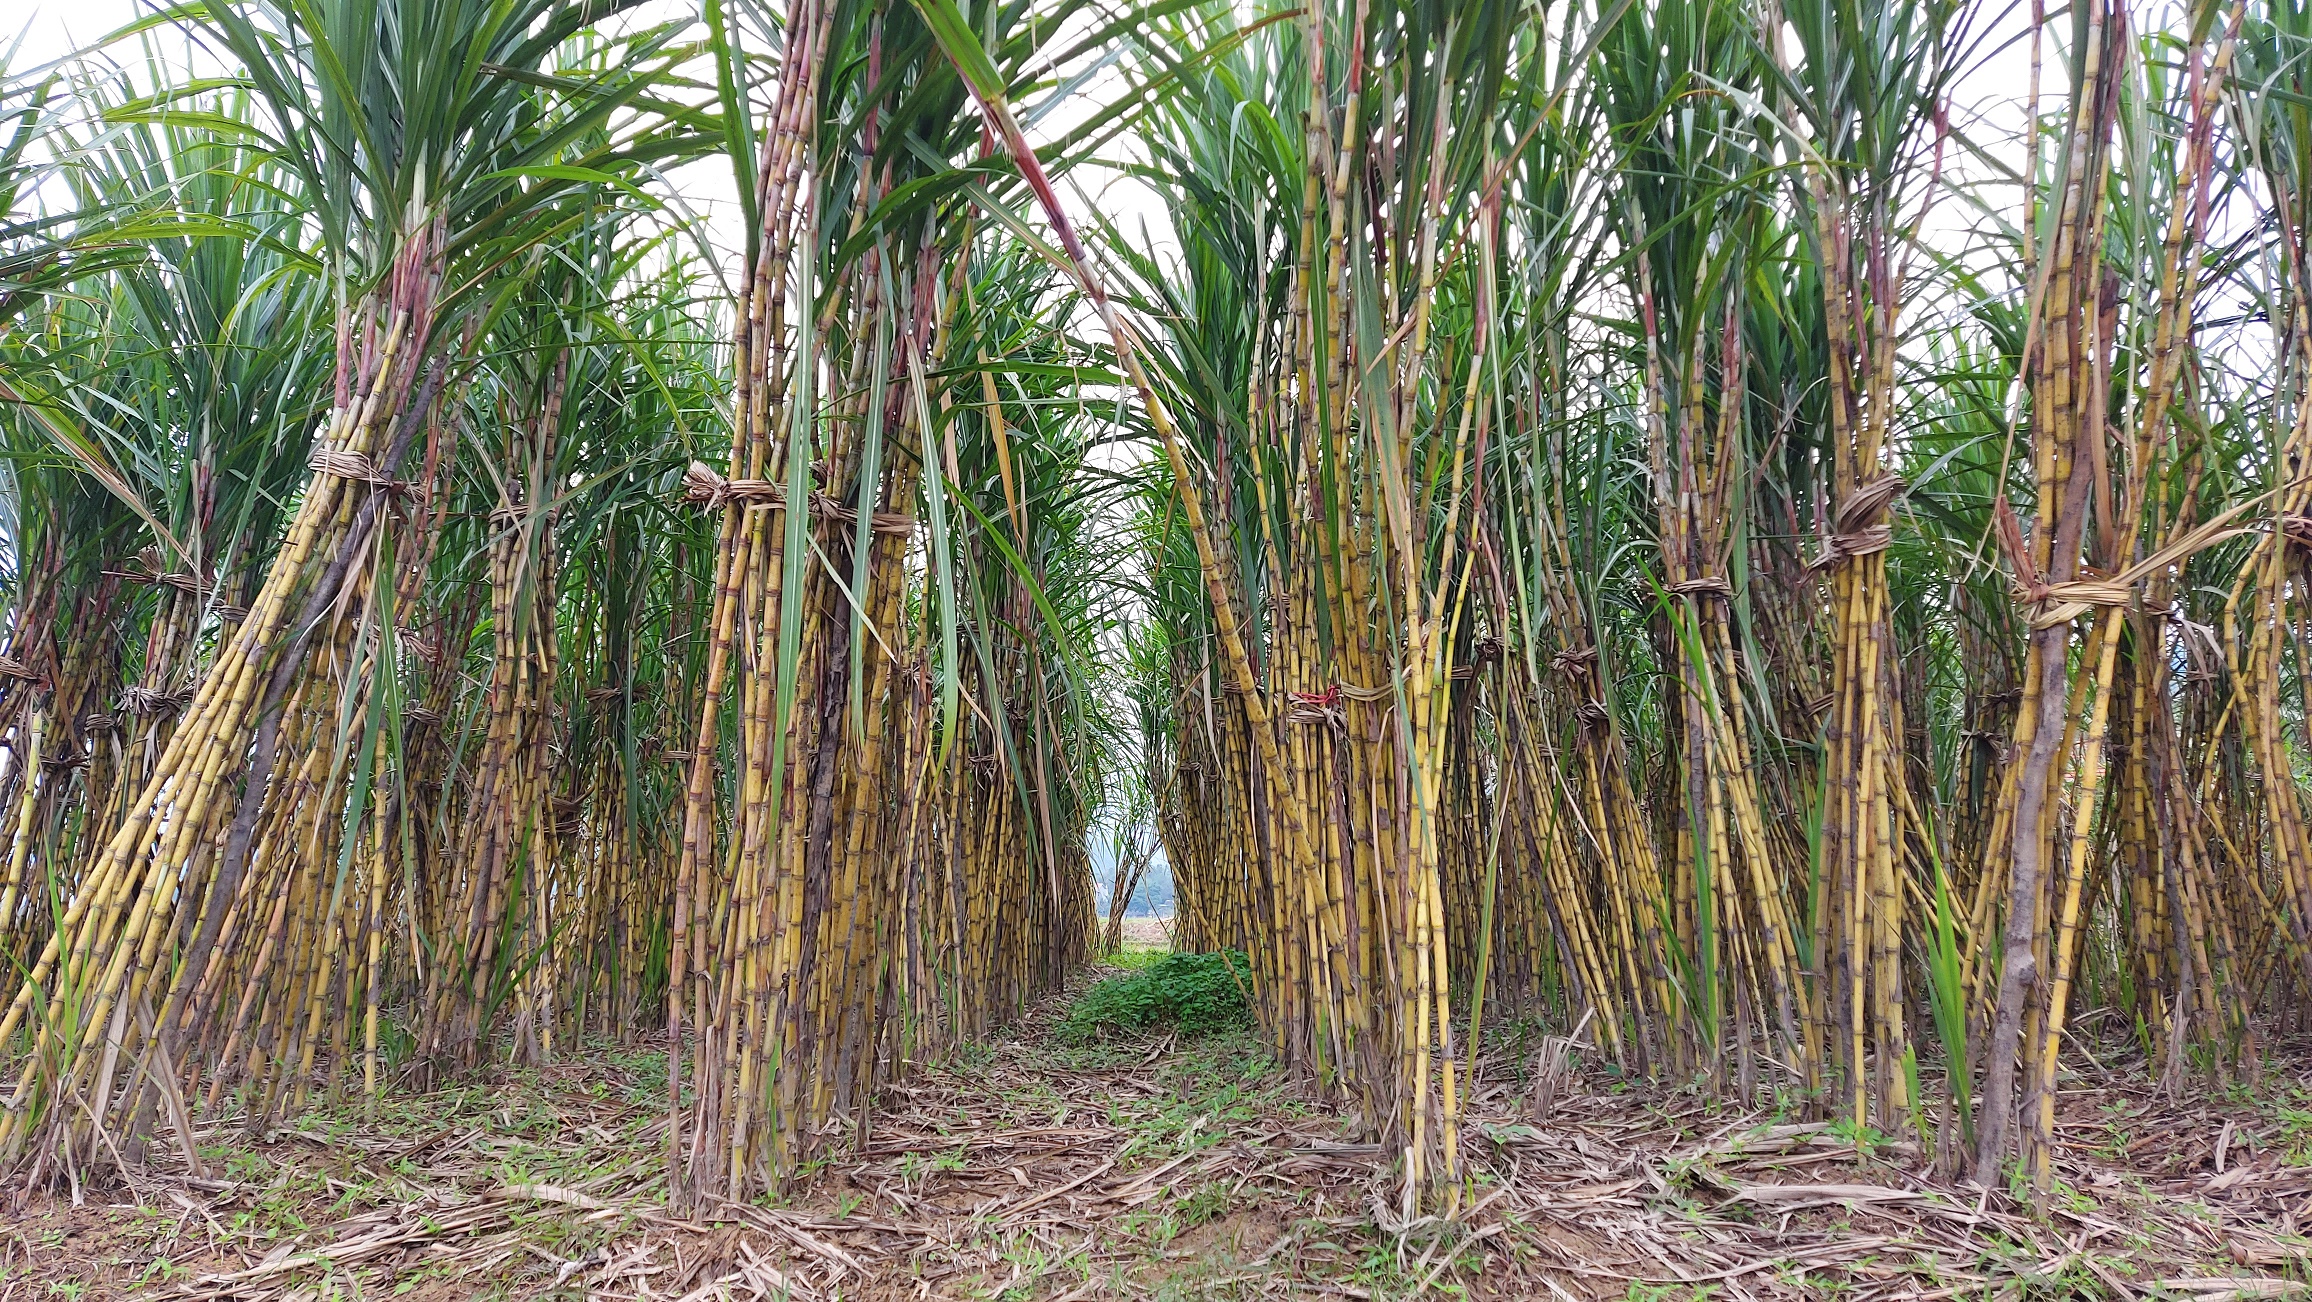 Tan Gia Thanh raw sugar cane farm in Viet Nam